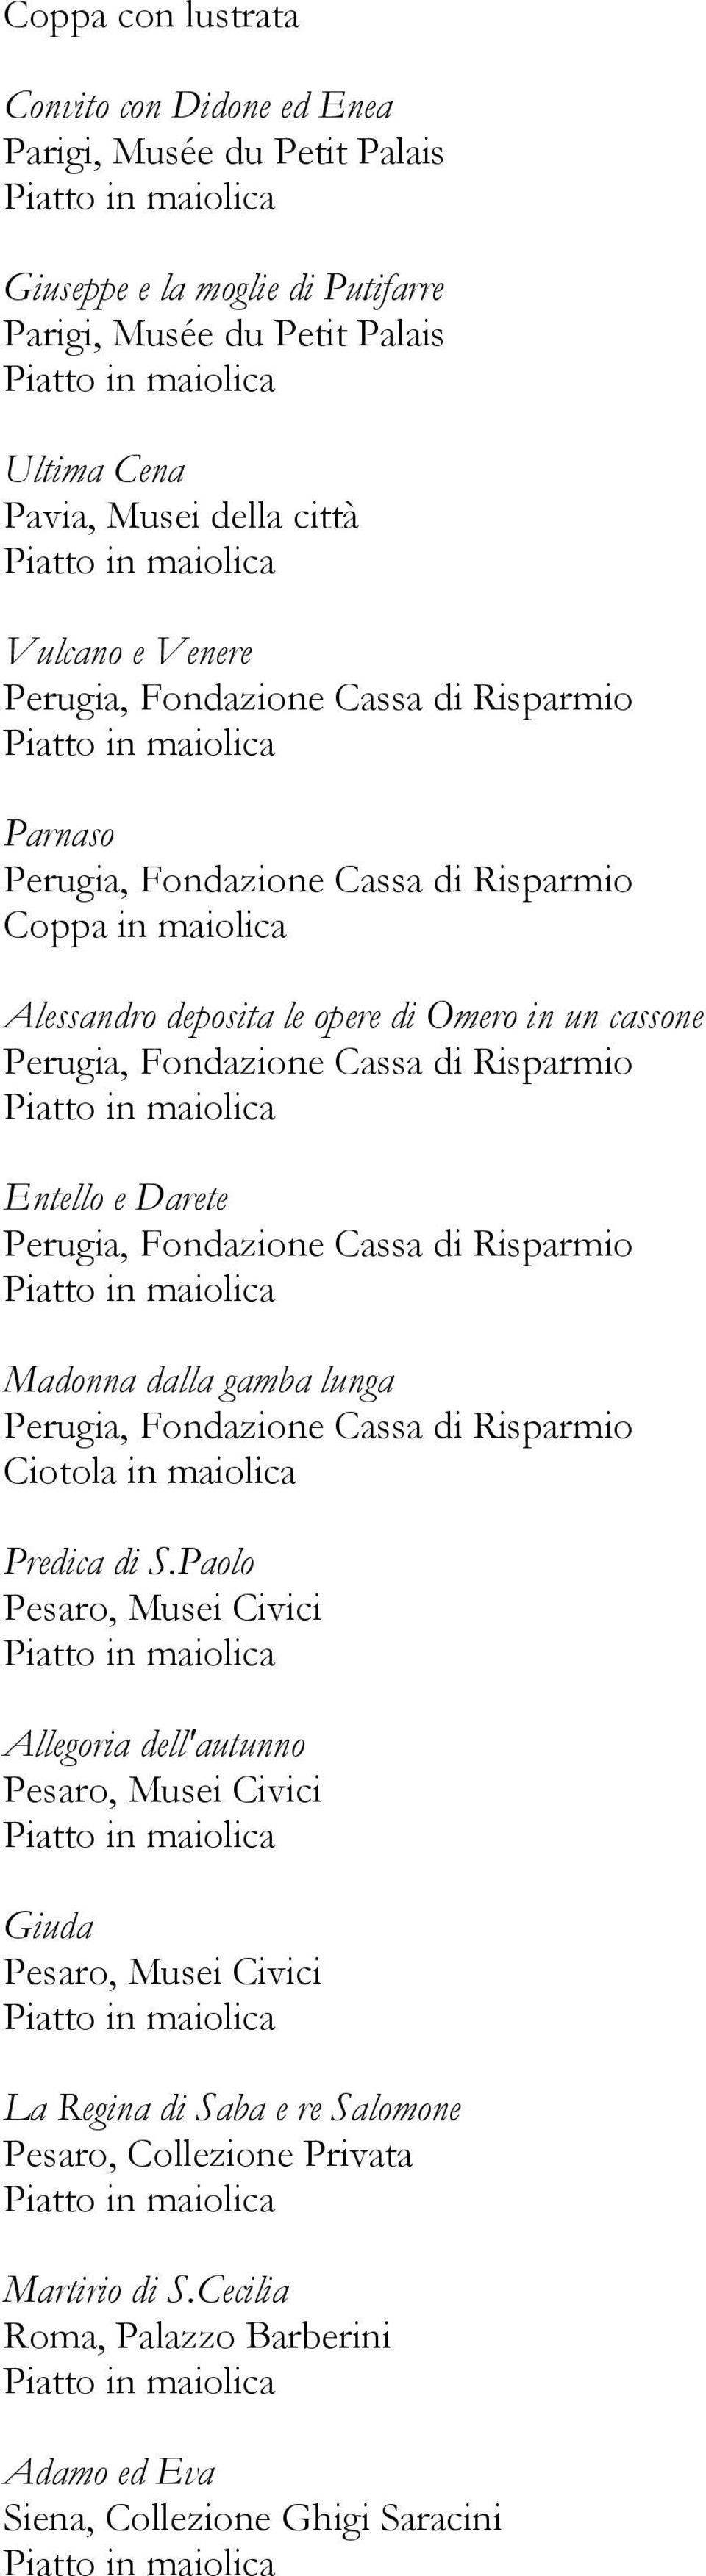 Entello e Darete Perugia, Fondazione Cassa di Risparmio Madonna dalla gamba lunga Perugia, Fondazione Cassa di Risparmio Ciotola in maiolica Predica di S.